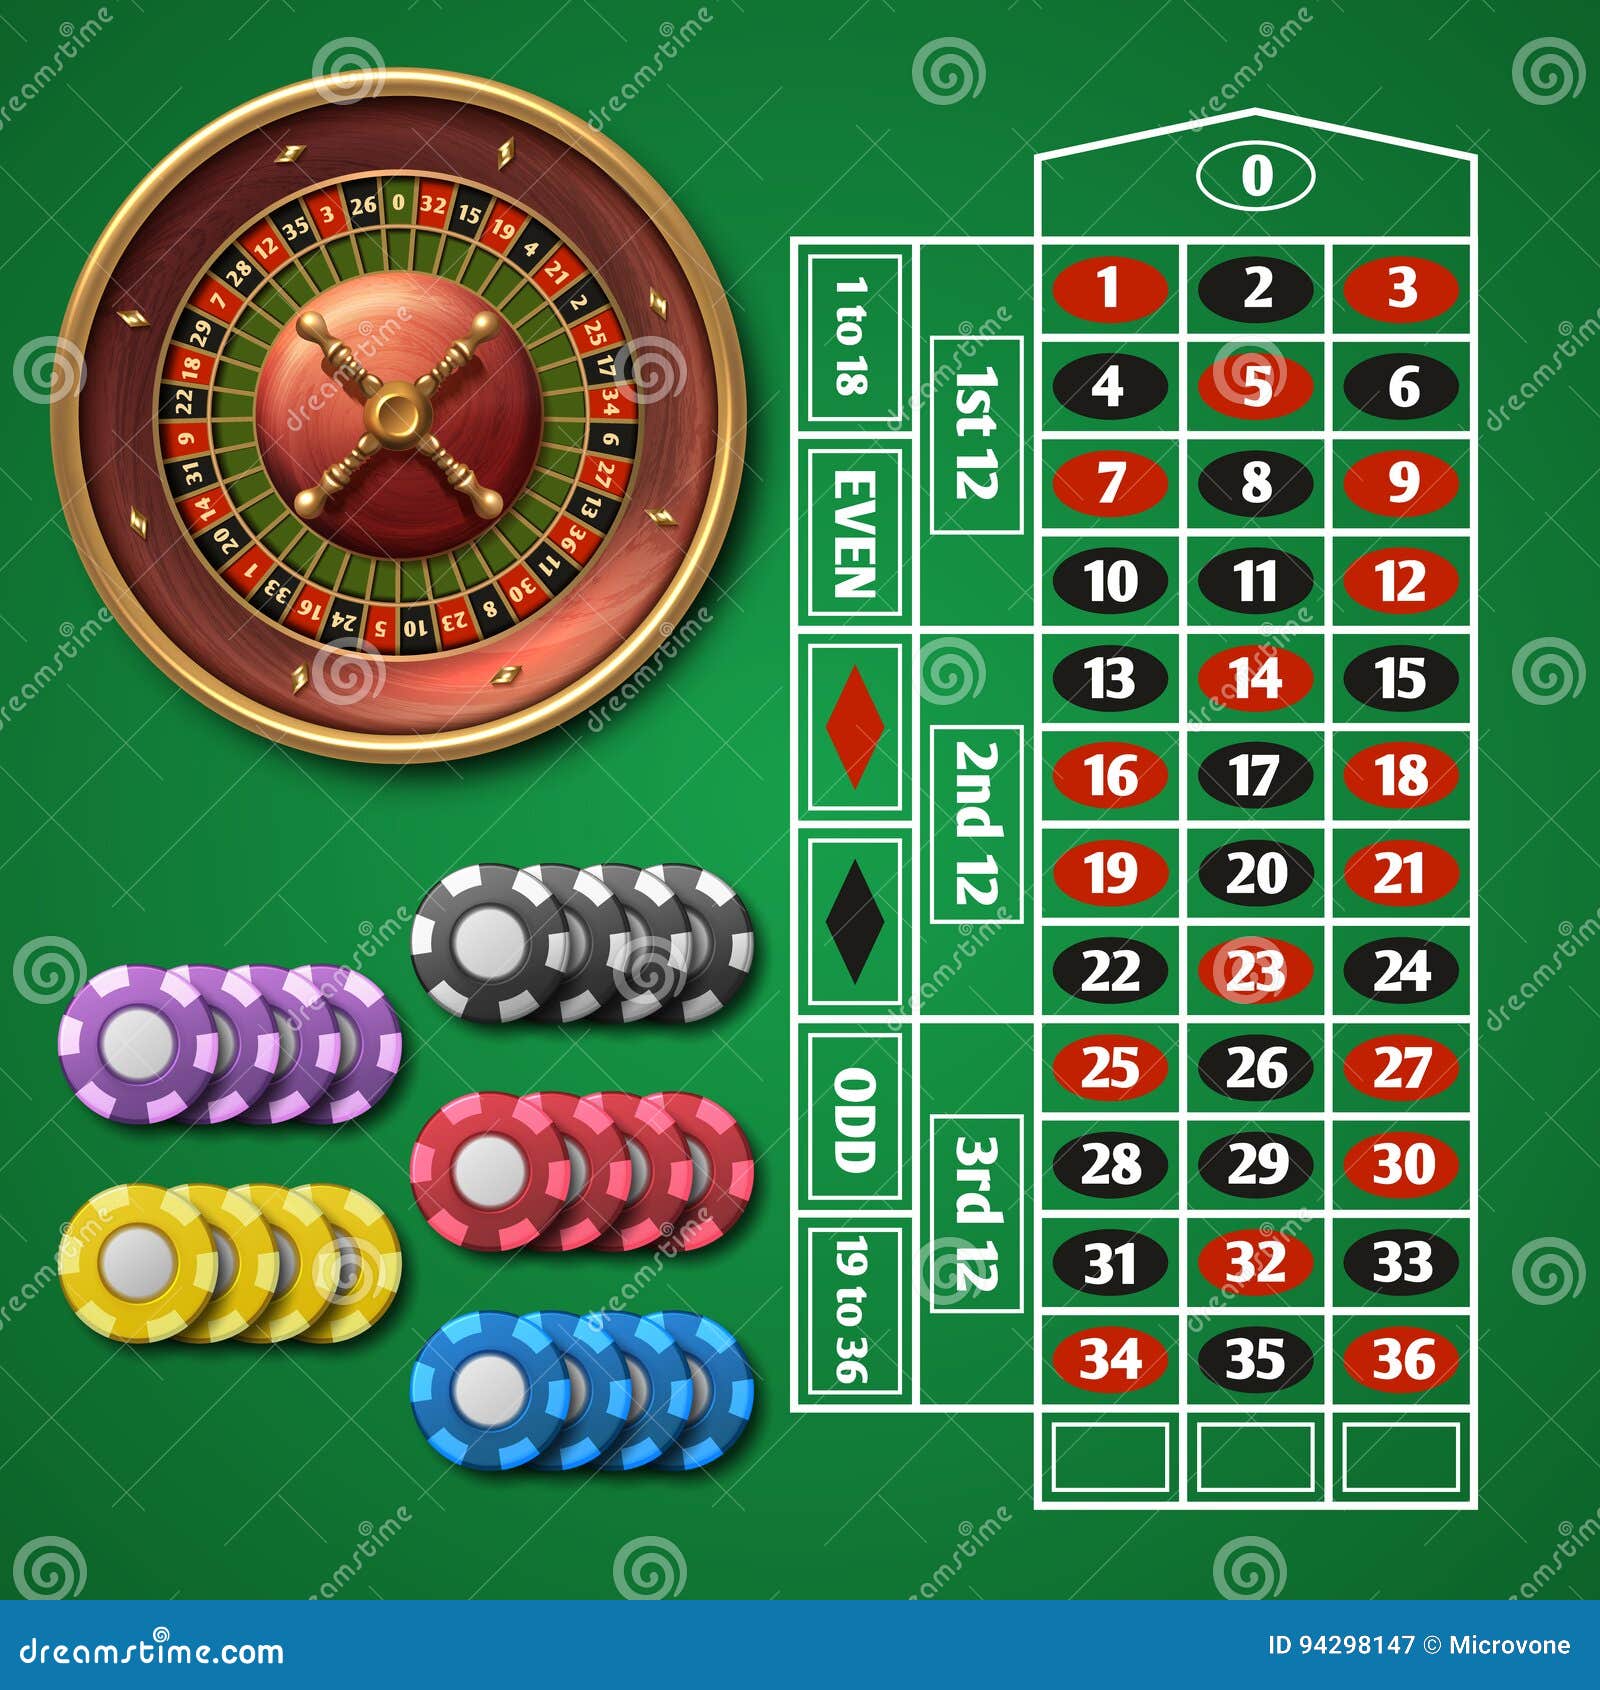 Азартные игры рулетка онлайн карта играть машины